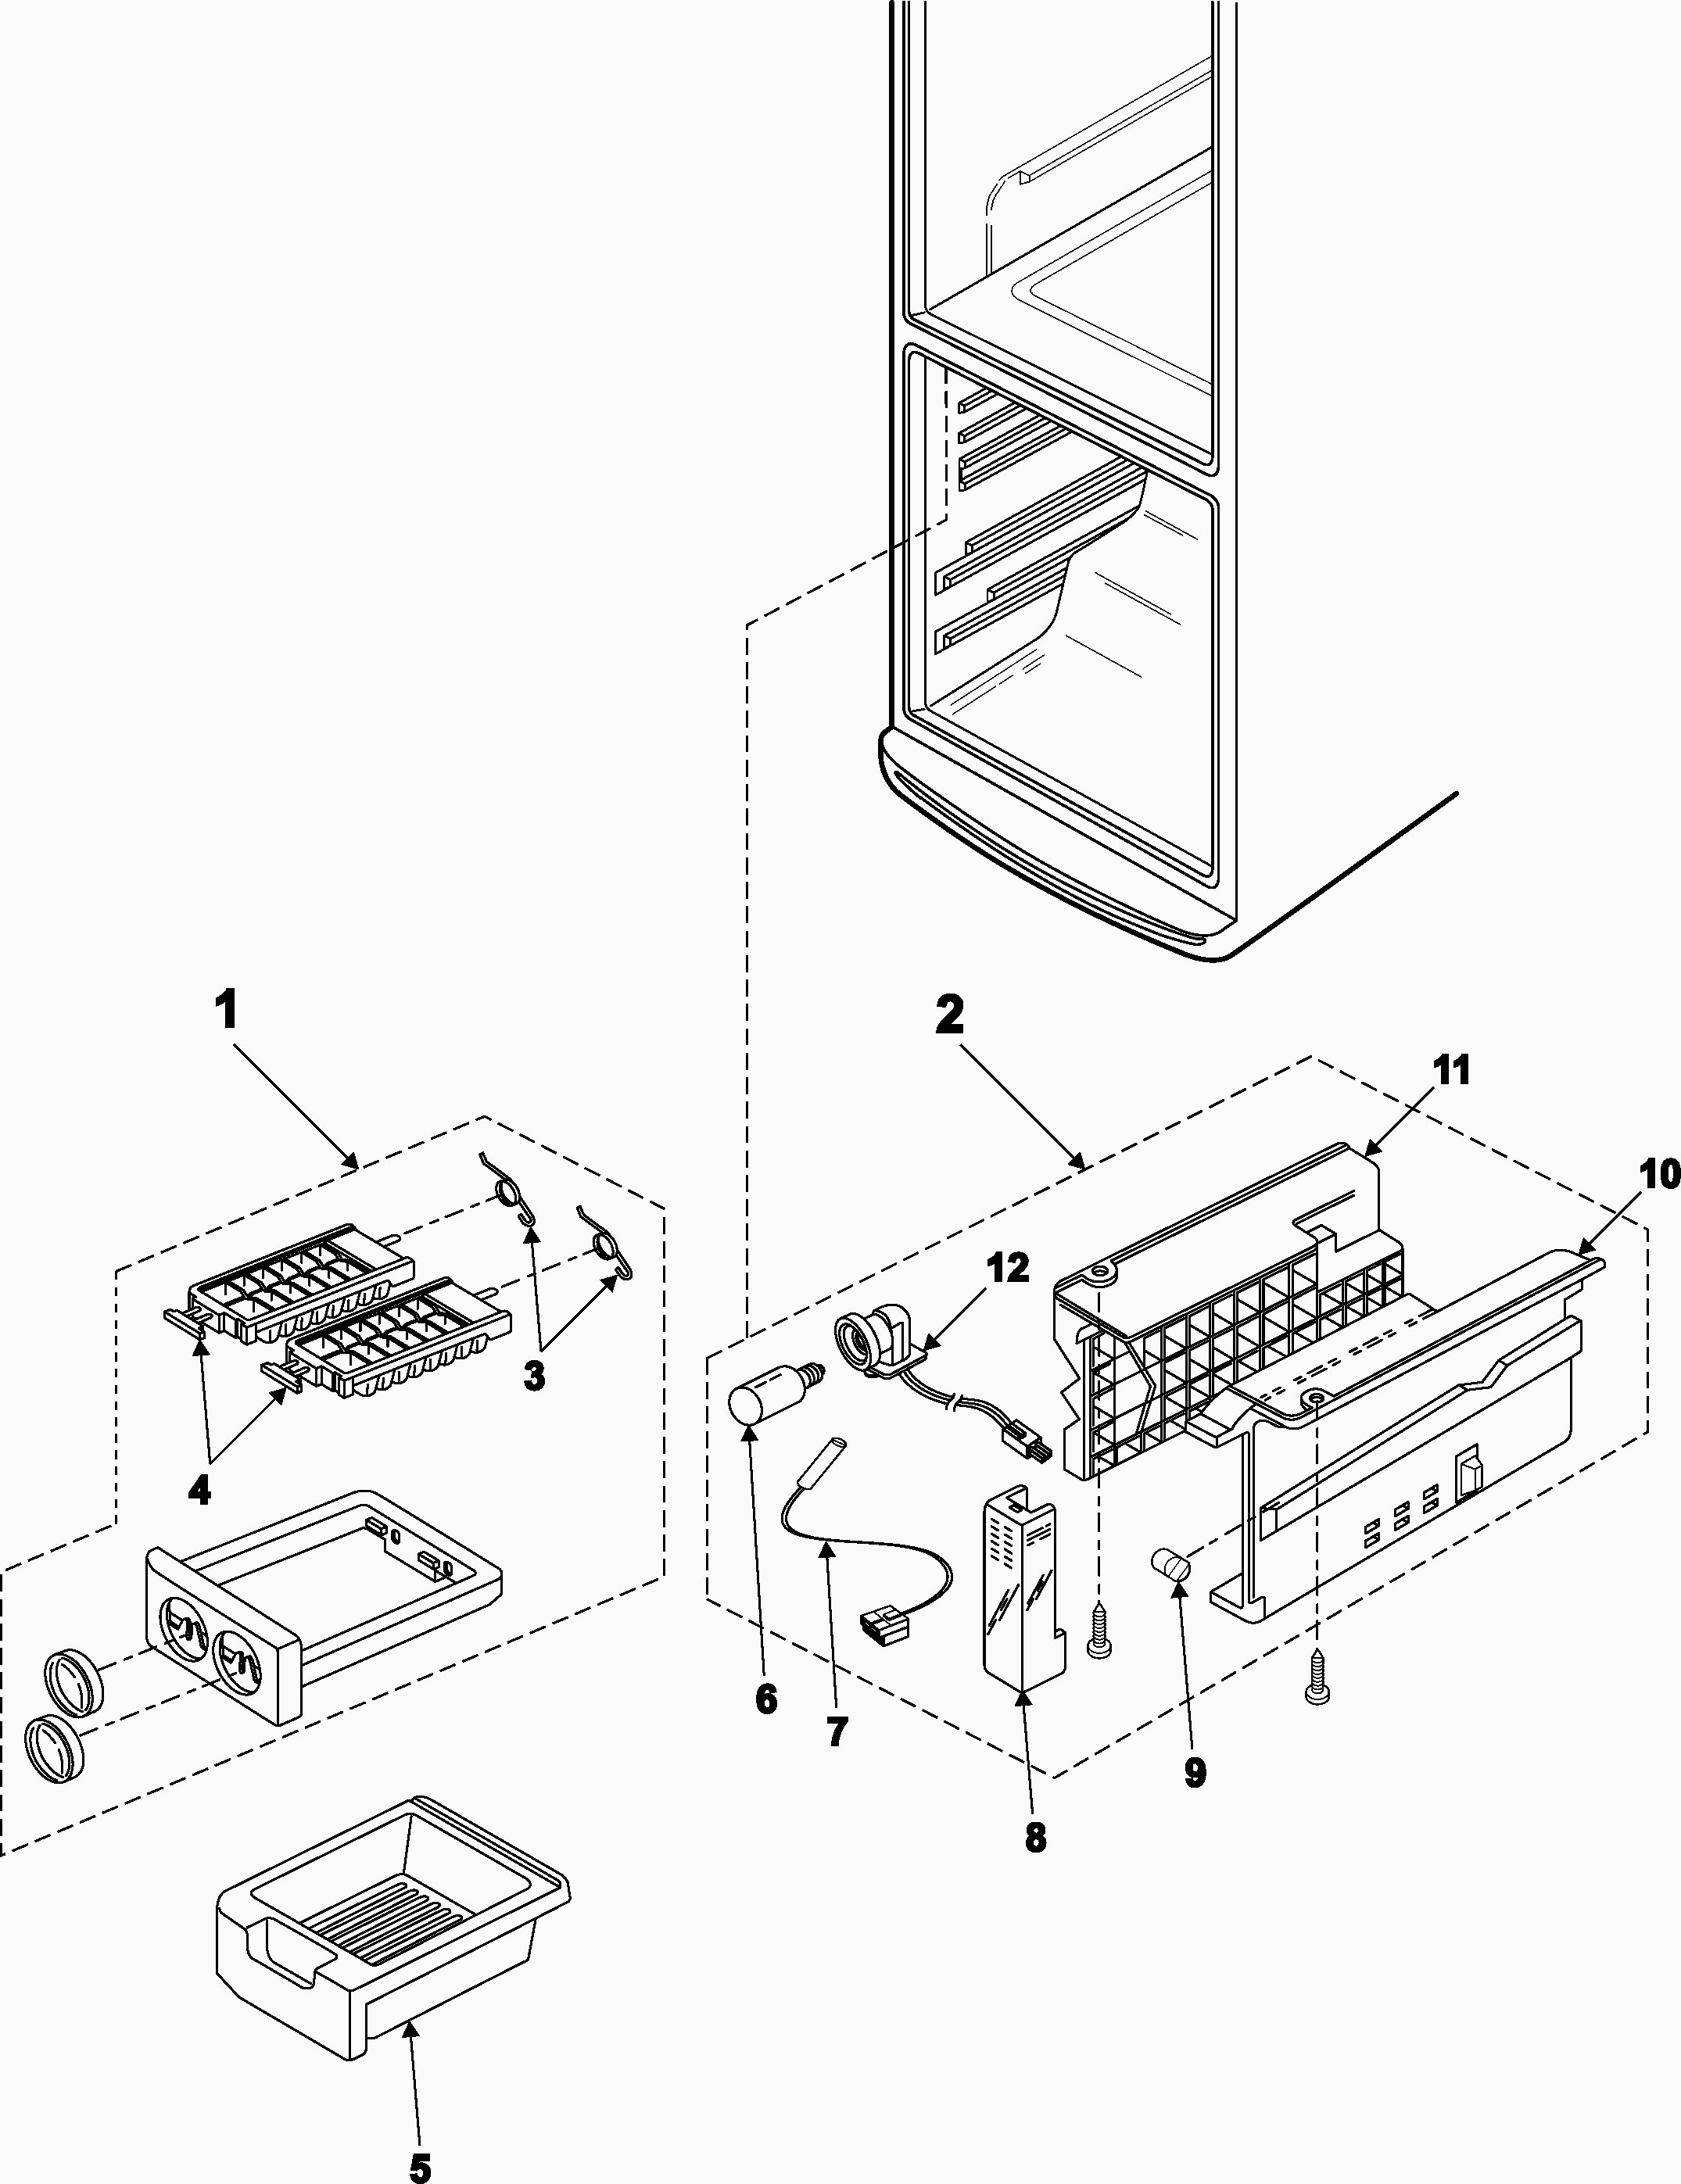 Ge Monogram Refrigerator Parts Diagram 23 Elegant Ge Monogram Refrigerator Parts Ines Style Of Ge Monogram Refrigerator Parts Diagram